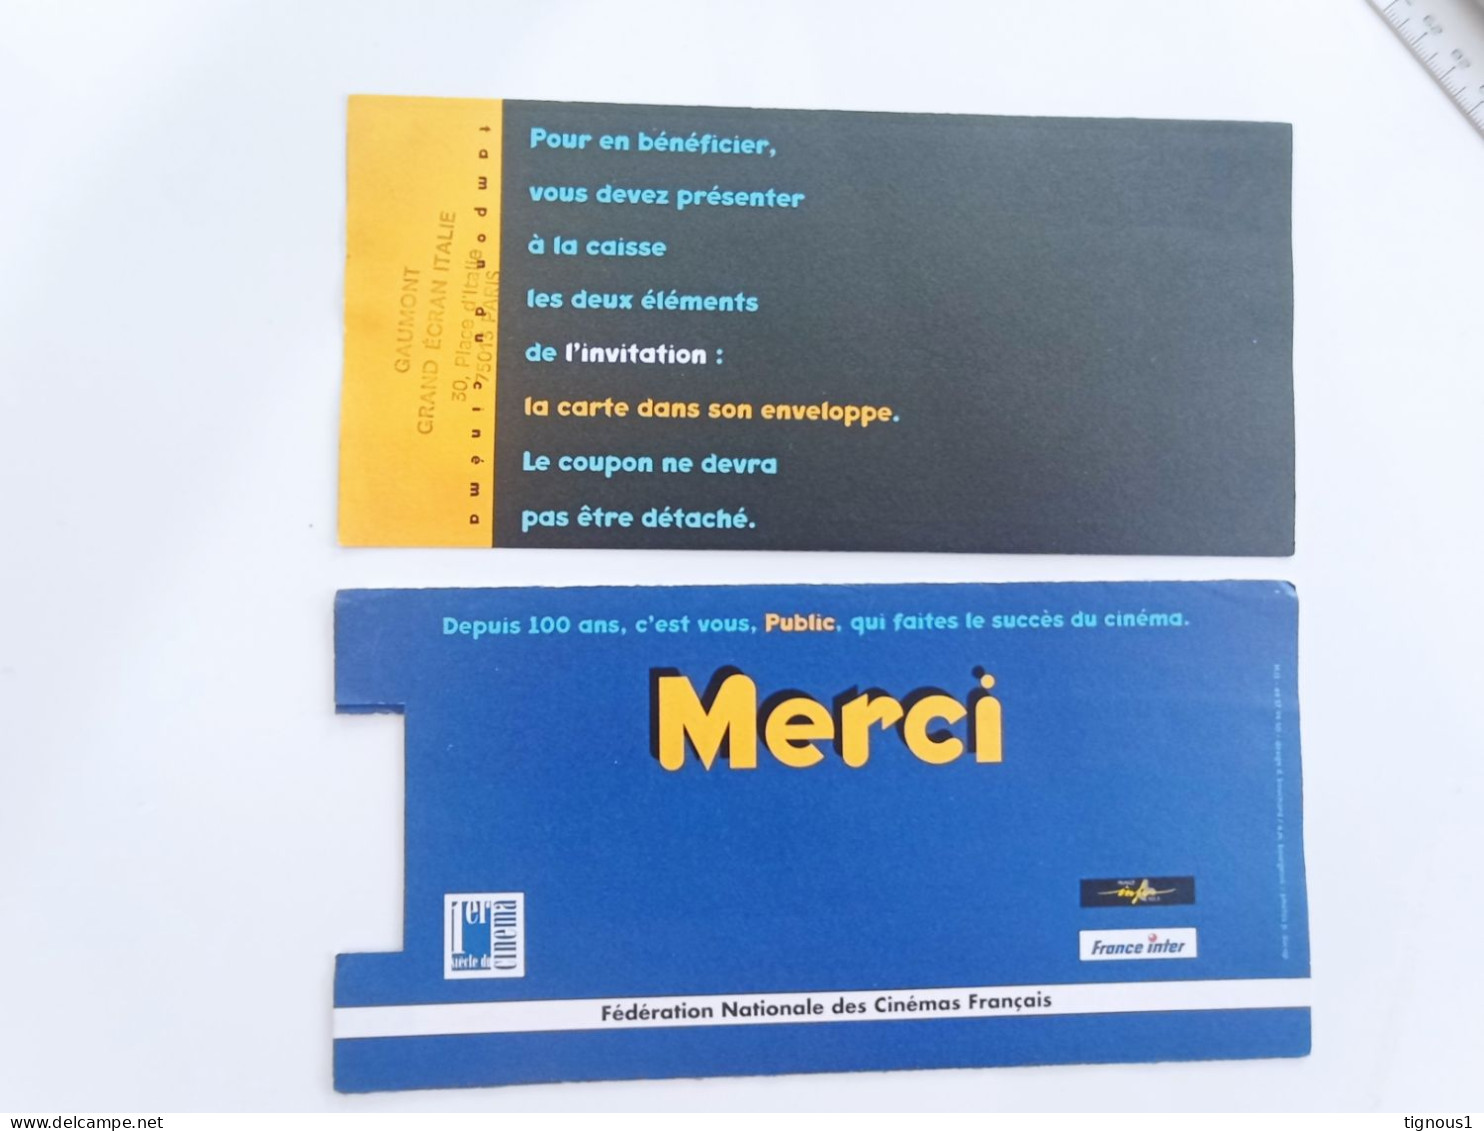 Ticket Du Siècle 1995 Pathé Grand écran Italie COMPLET - COLLECTOR - Werbetrailer